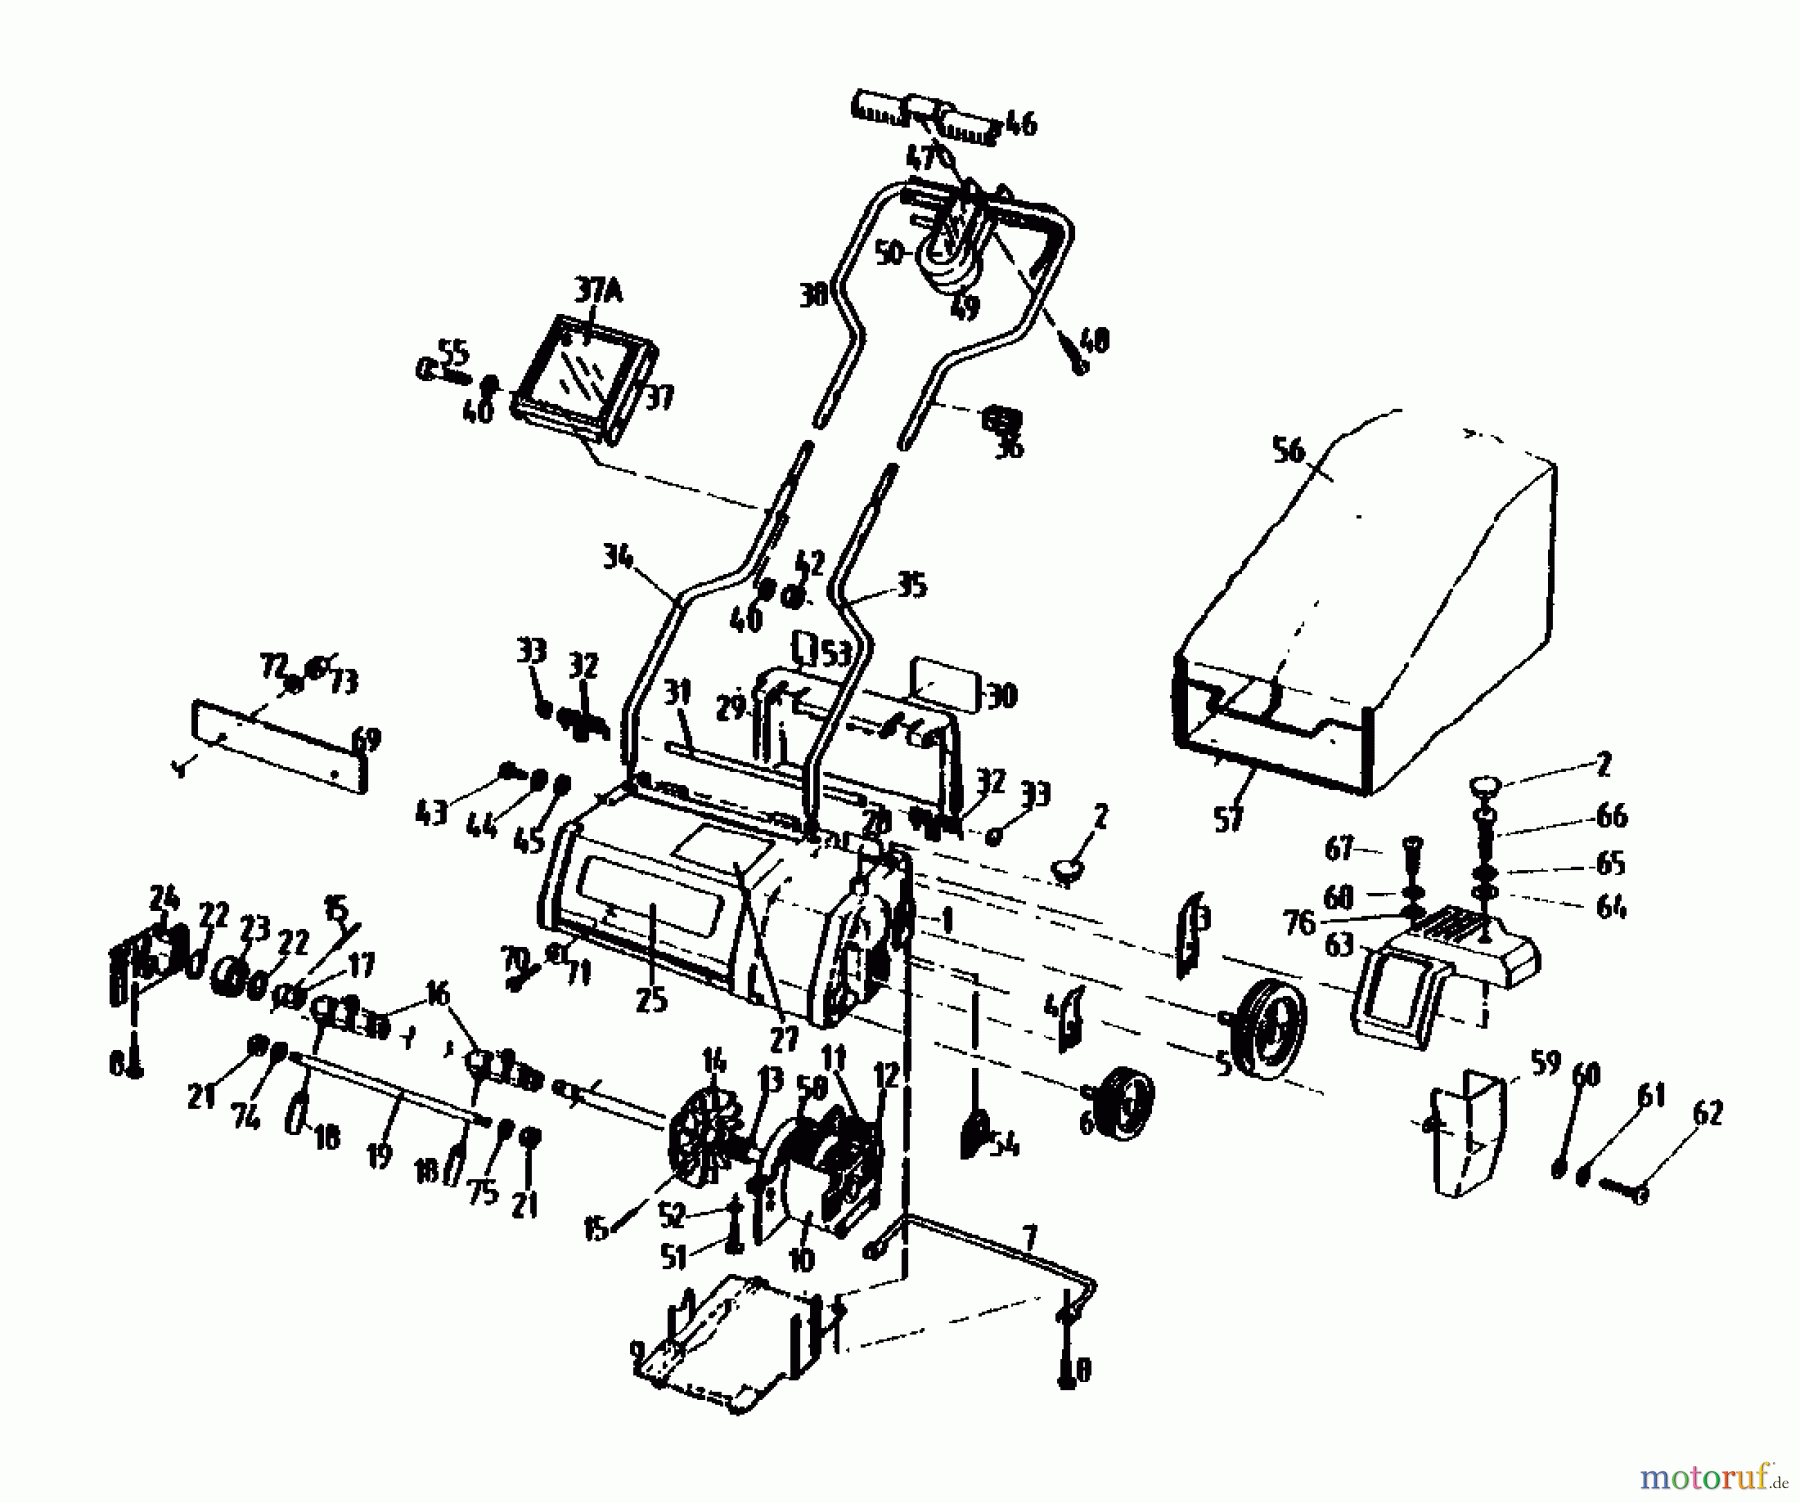  Gutbrod Scarificateur électrique VE 32 02846.04  (1991) Machine de base